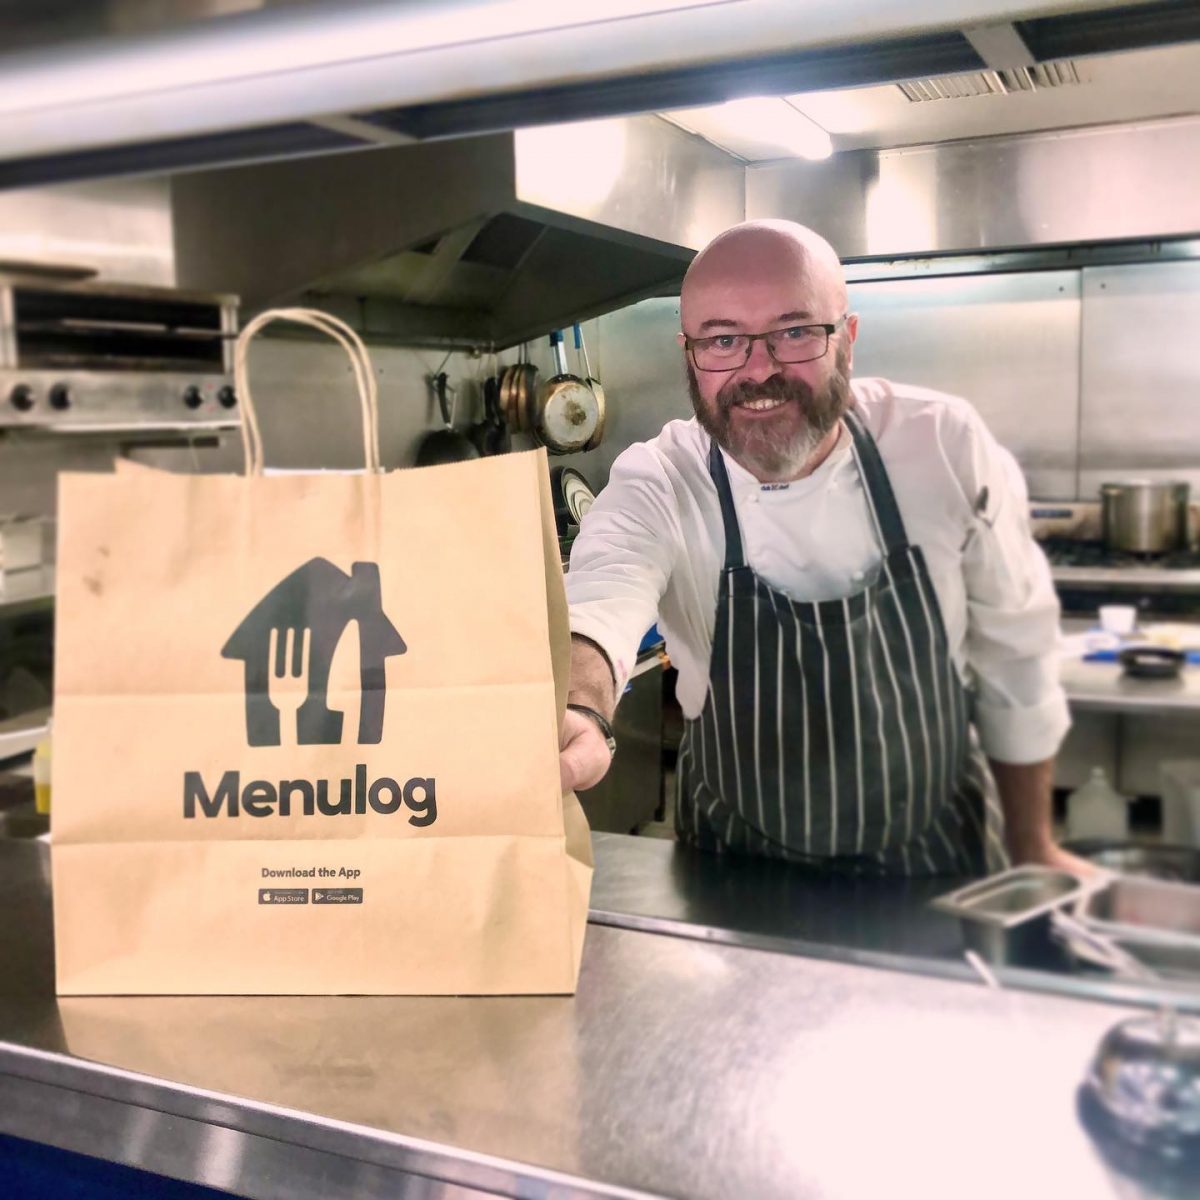 Chef with Menulog bag